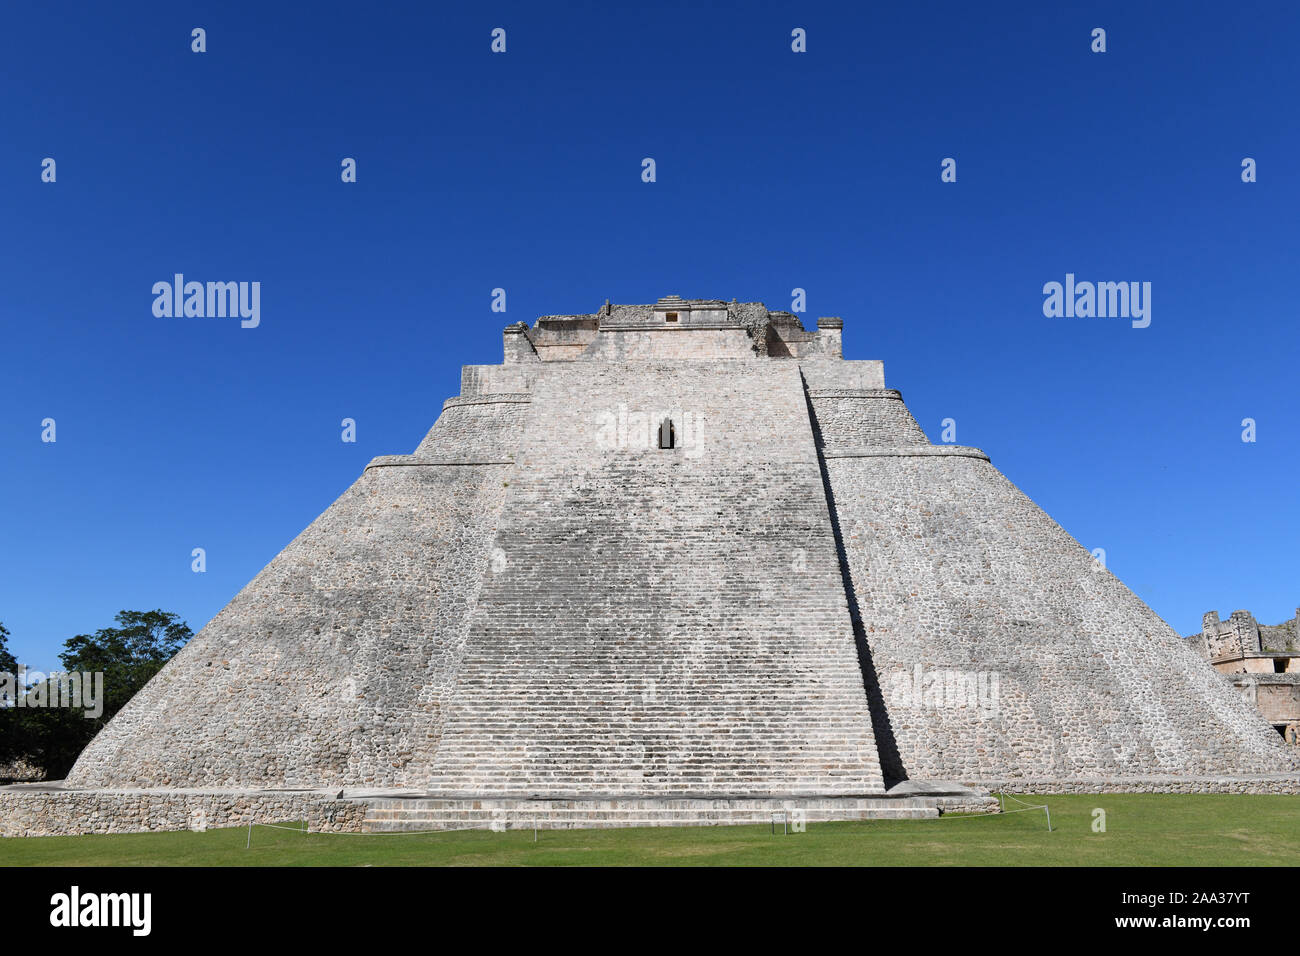 Piramide del mago in Uxmal, antica città maya del periodo classico si trova nella regione Puuc della parte orientale della penisola dello Yucatan, Messico Foto Stock